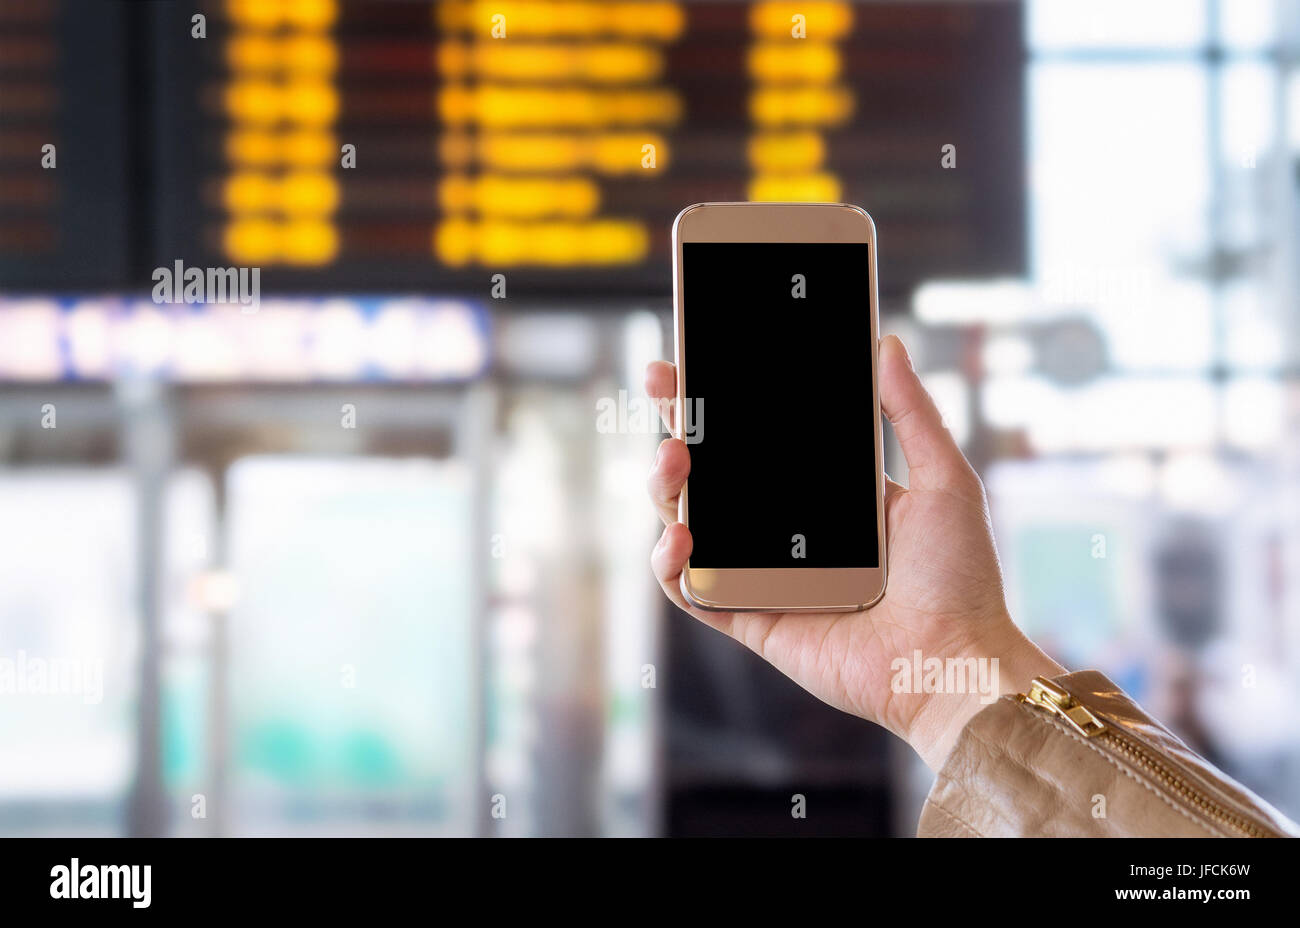 Smartphone con schermo vuoto in autobus, treno, metropolitana, metropolitana o metropolitana stazione o aeroporto. Pubblico universale terminale di trasporto. Foto Stock